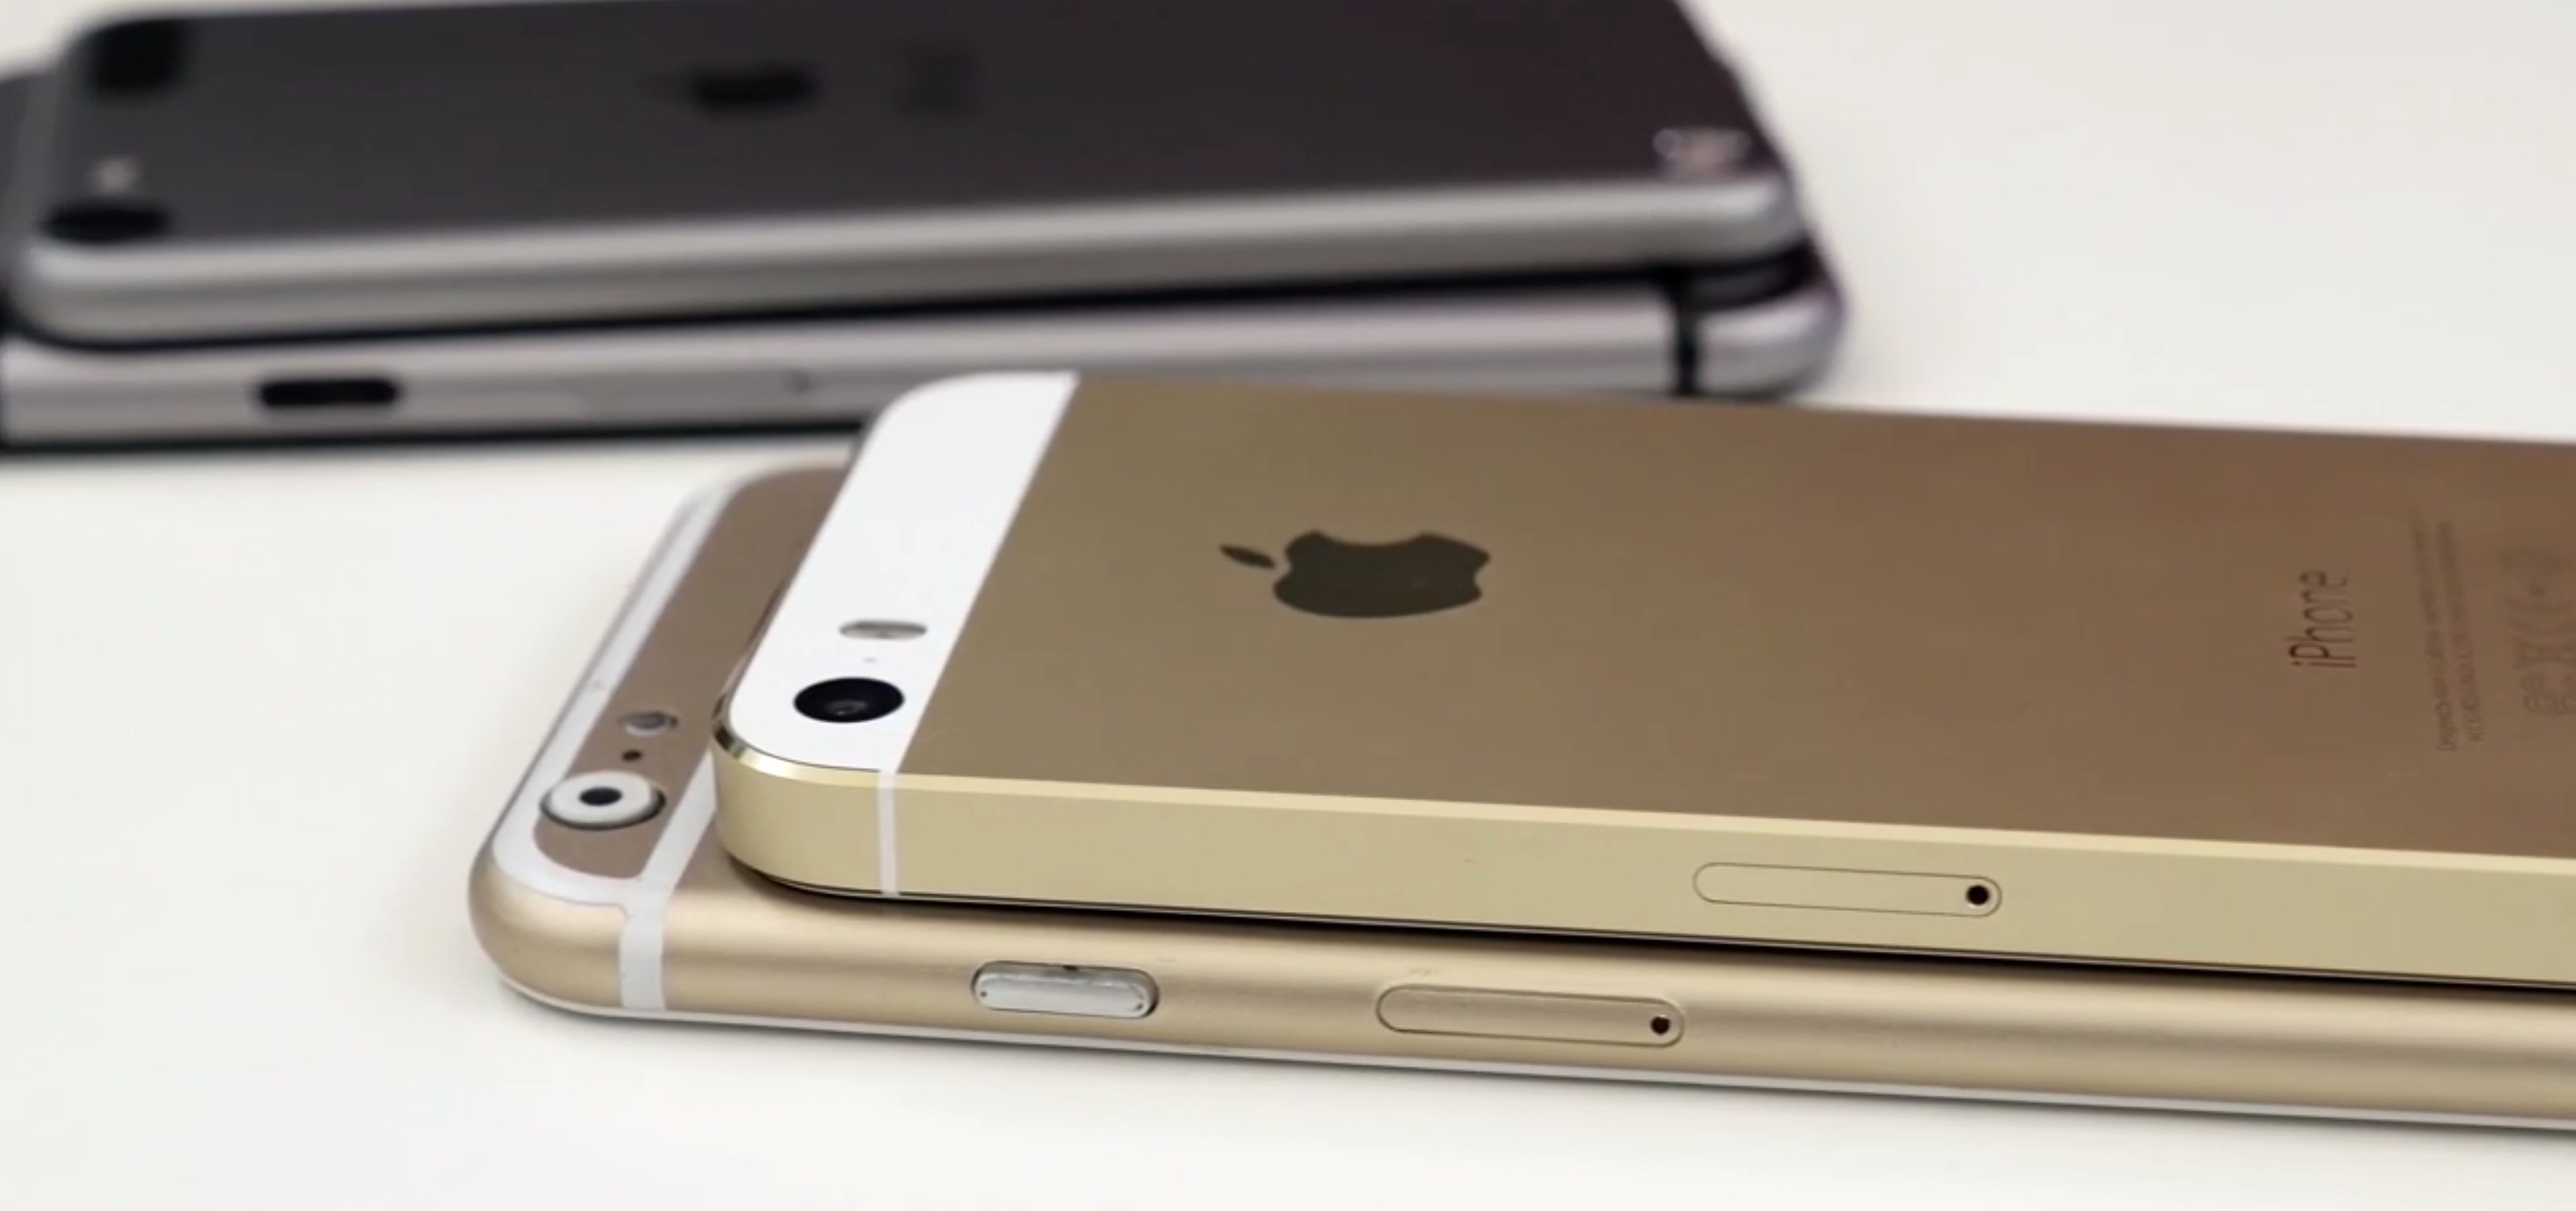 Foxconn startet iPhone 6 Produktion im Juli 10